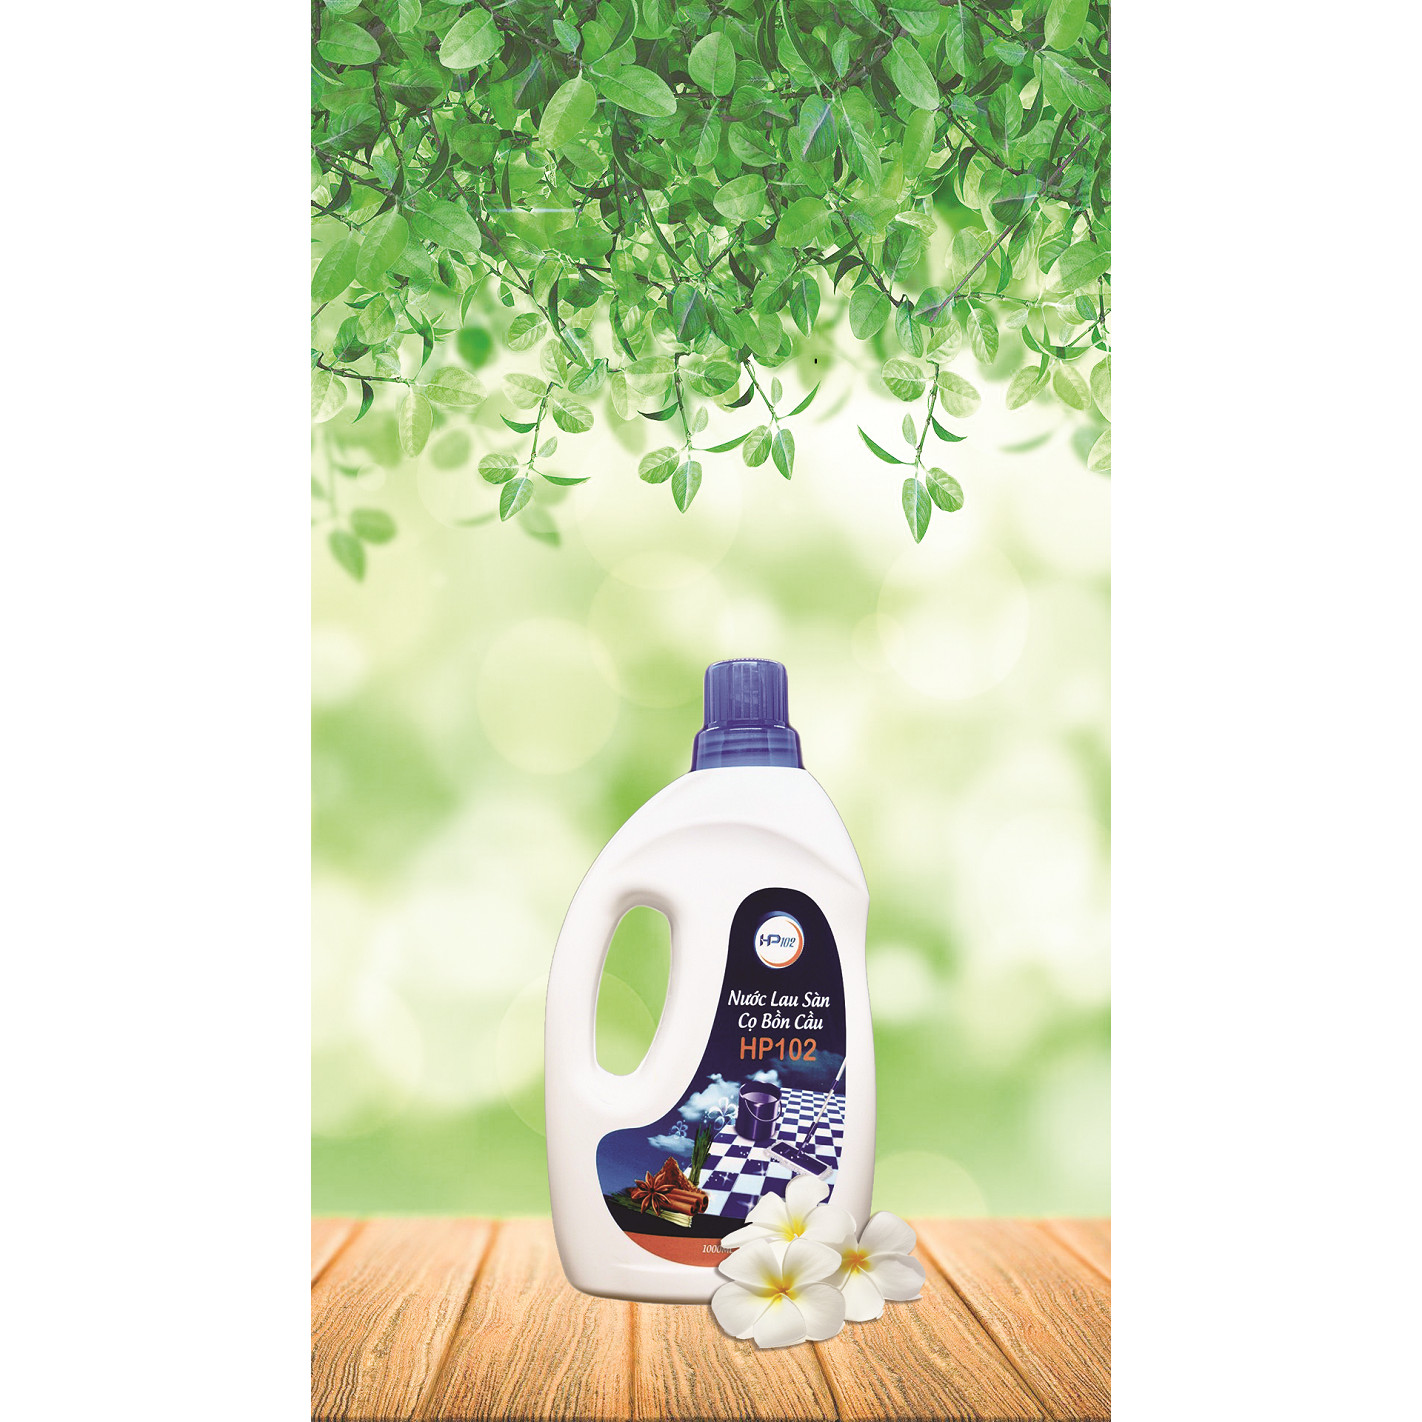 Nước Lau Sàn - Tẩy Rửa Bồn Cầu HP102 - Sản phẩm có mùi thơm tự nhiên, và khả năng tẩy sạch ưu việt không kém các loại sản phẩm tẩy rửa khác (2 trong 1).